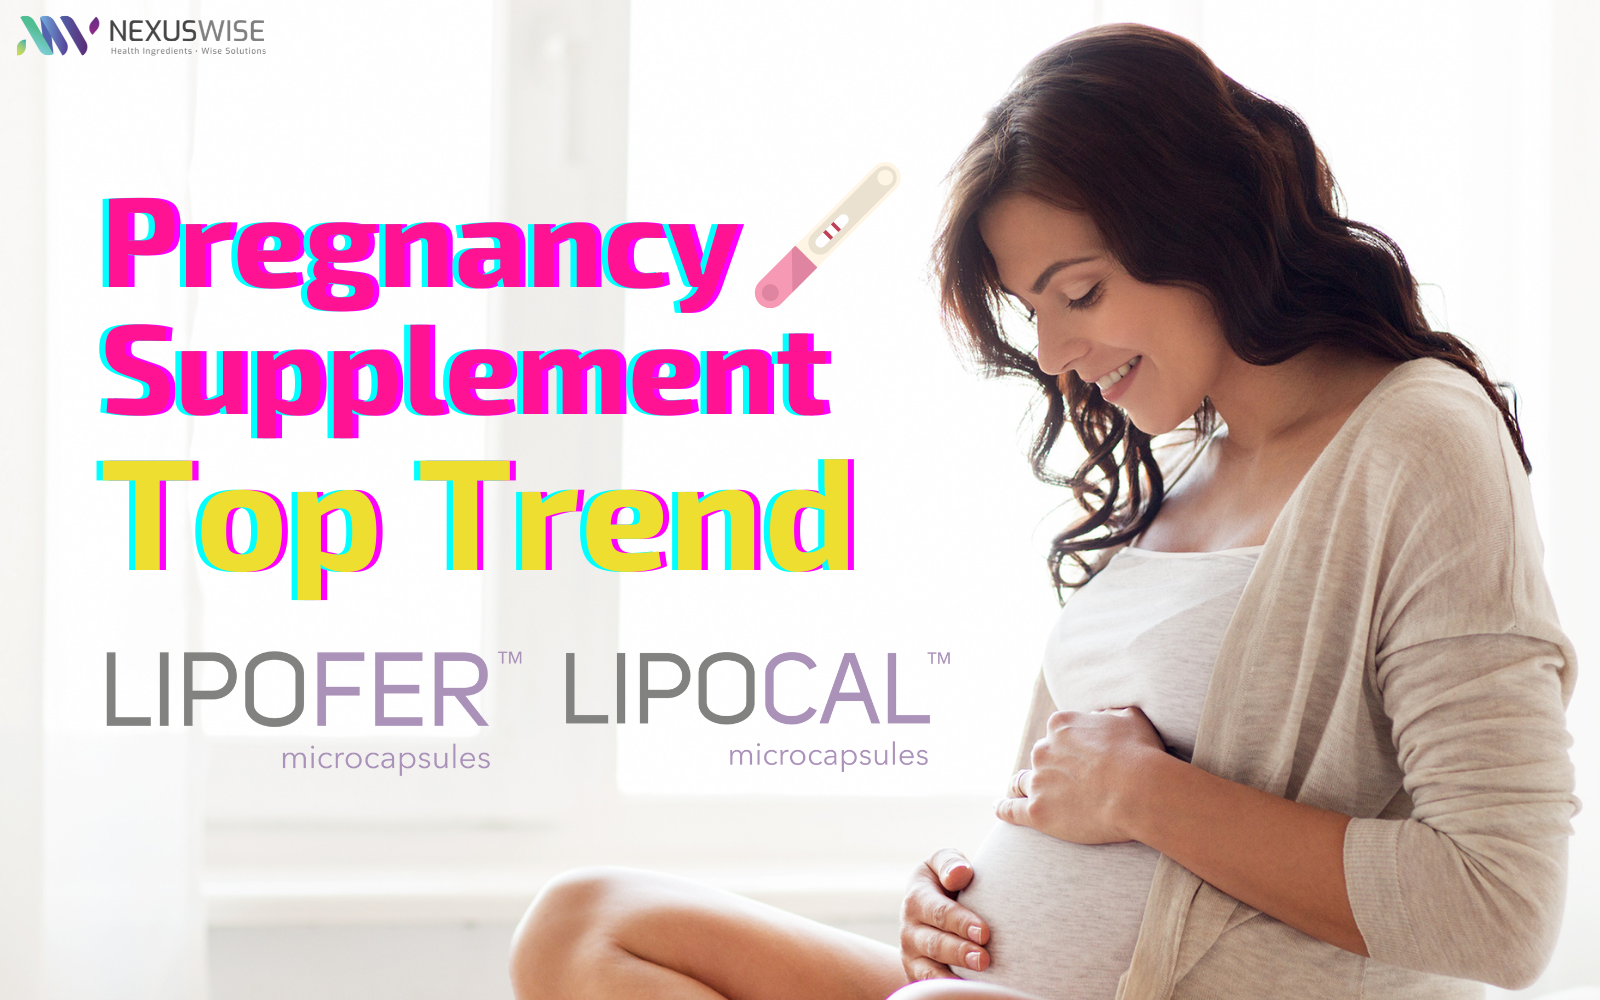 nexus wise market trend pregnancy supplement top trend